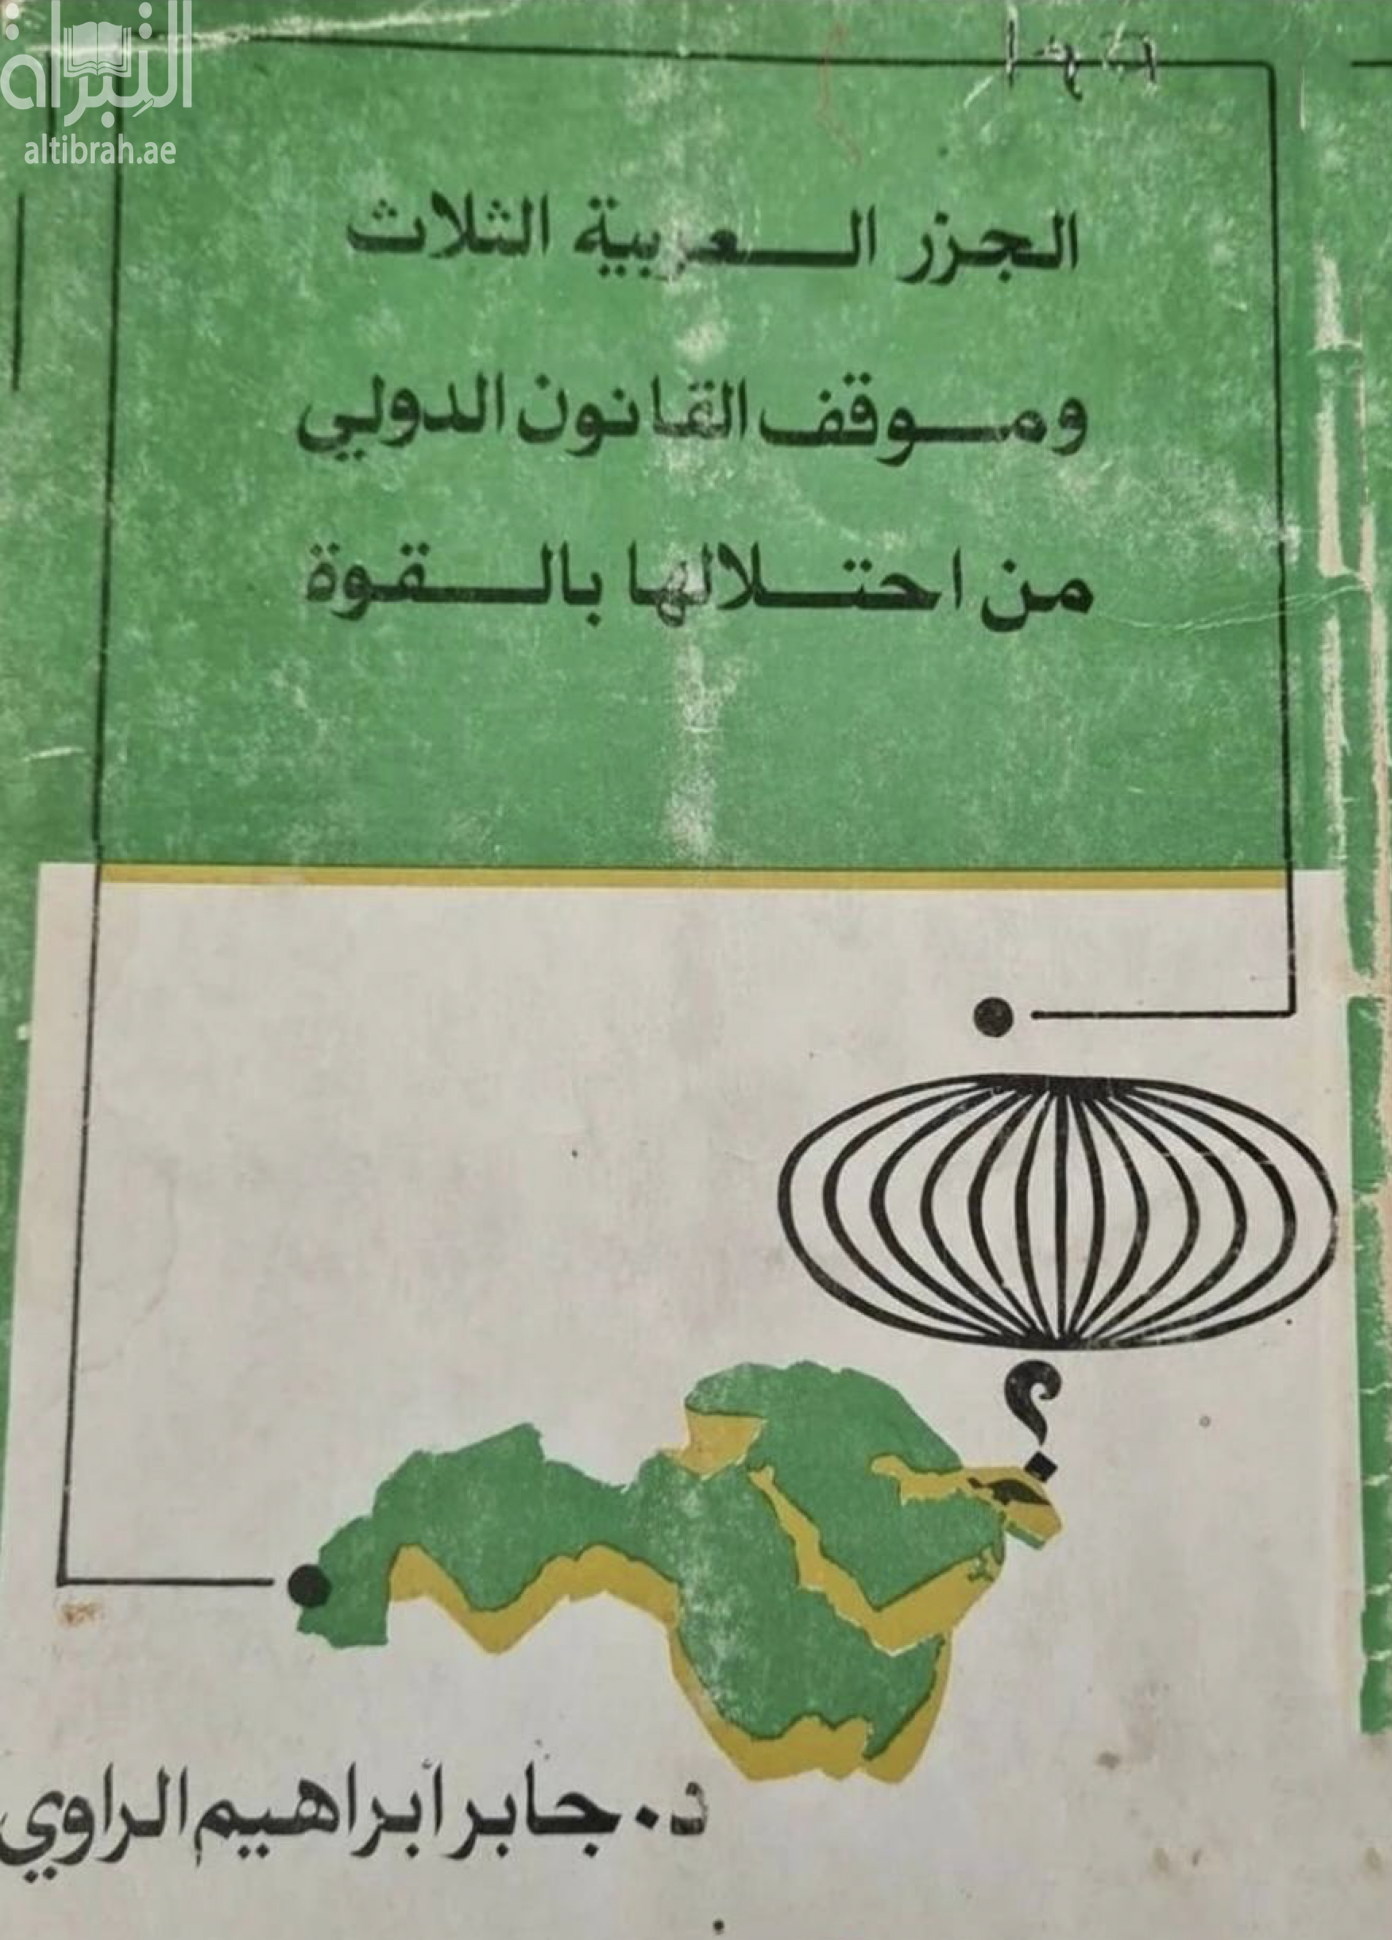 الجزر العربية الثلاث وموقف القانون الدولي من إحتلالها بالقوة